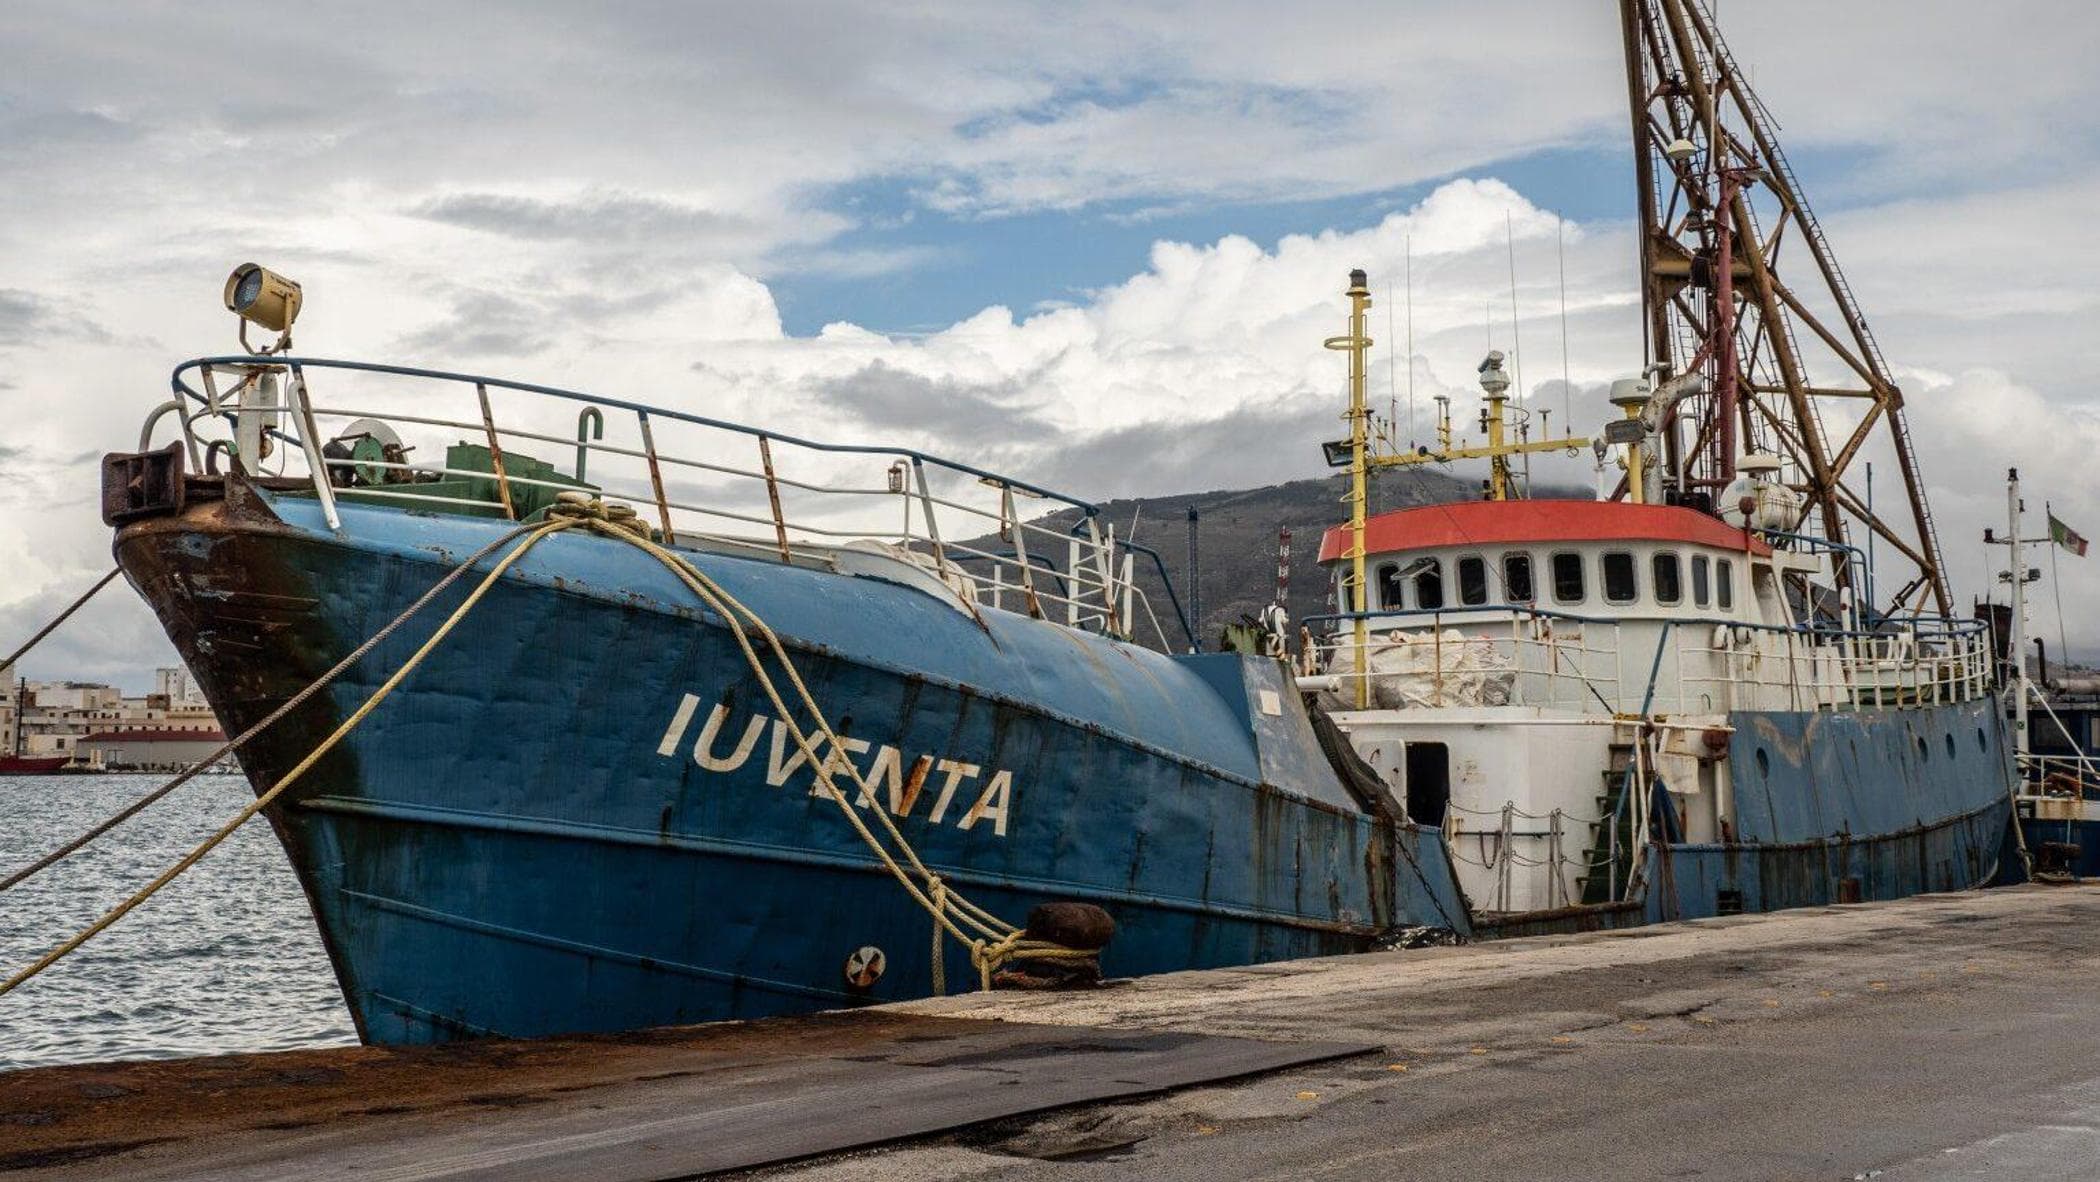 Migranti, assolto l'equipaggio della nave Iuventa: l'accusa era di favoreggiamento all'immigrazione clandestina